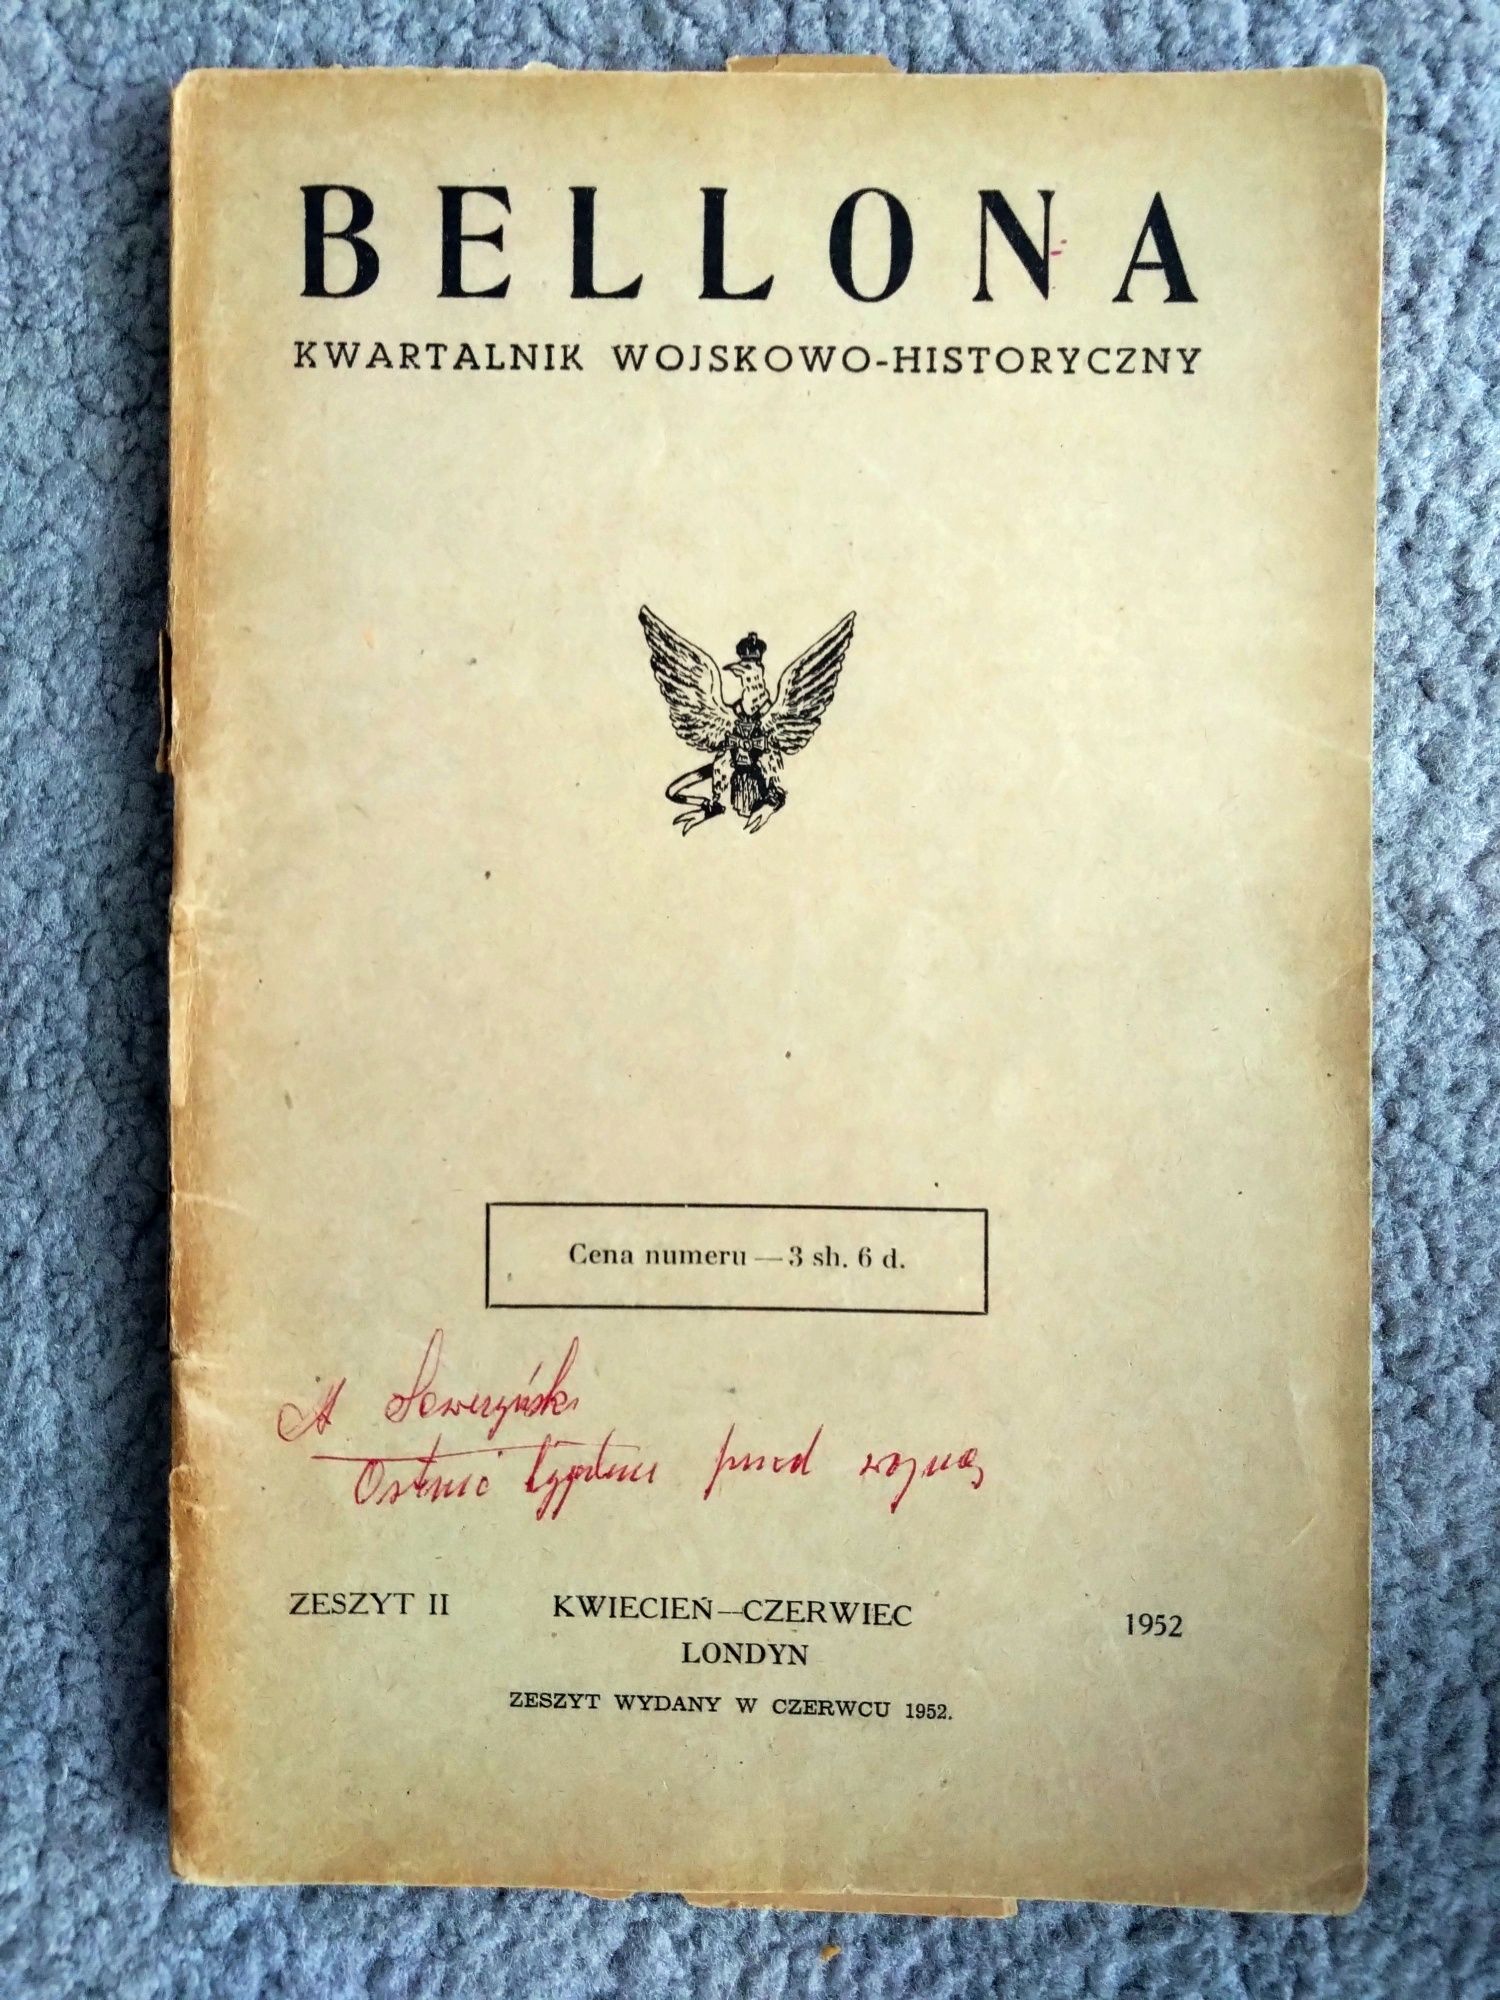 Bellona - Kwartalnik Wojskowo - Historyczny 1952. Zeszyt nr. II